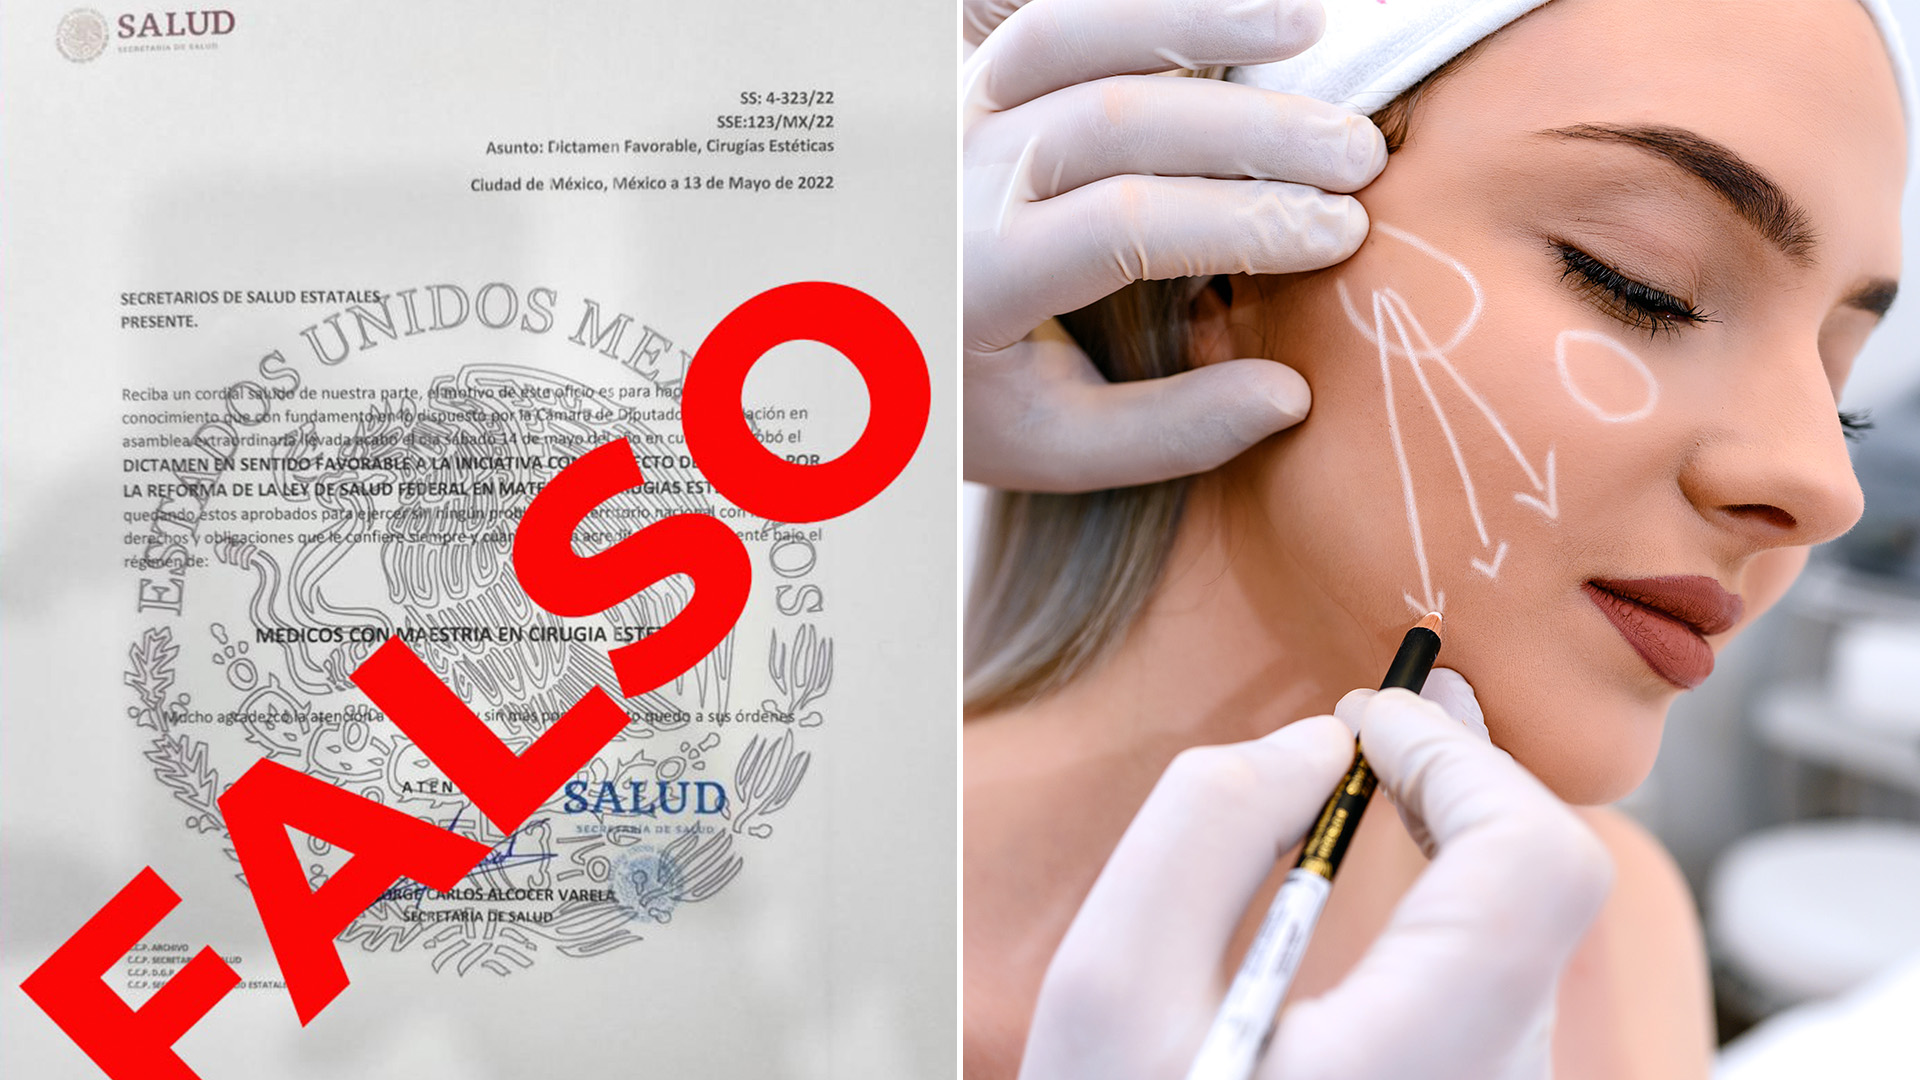 La Secretaría de Salud informó que la información sobre una supuesta reforma a la Ley de Salud en materia de cirugías estéticas es falsa (Fotos: Tw/@SSalud_mx, Getty Images)